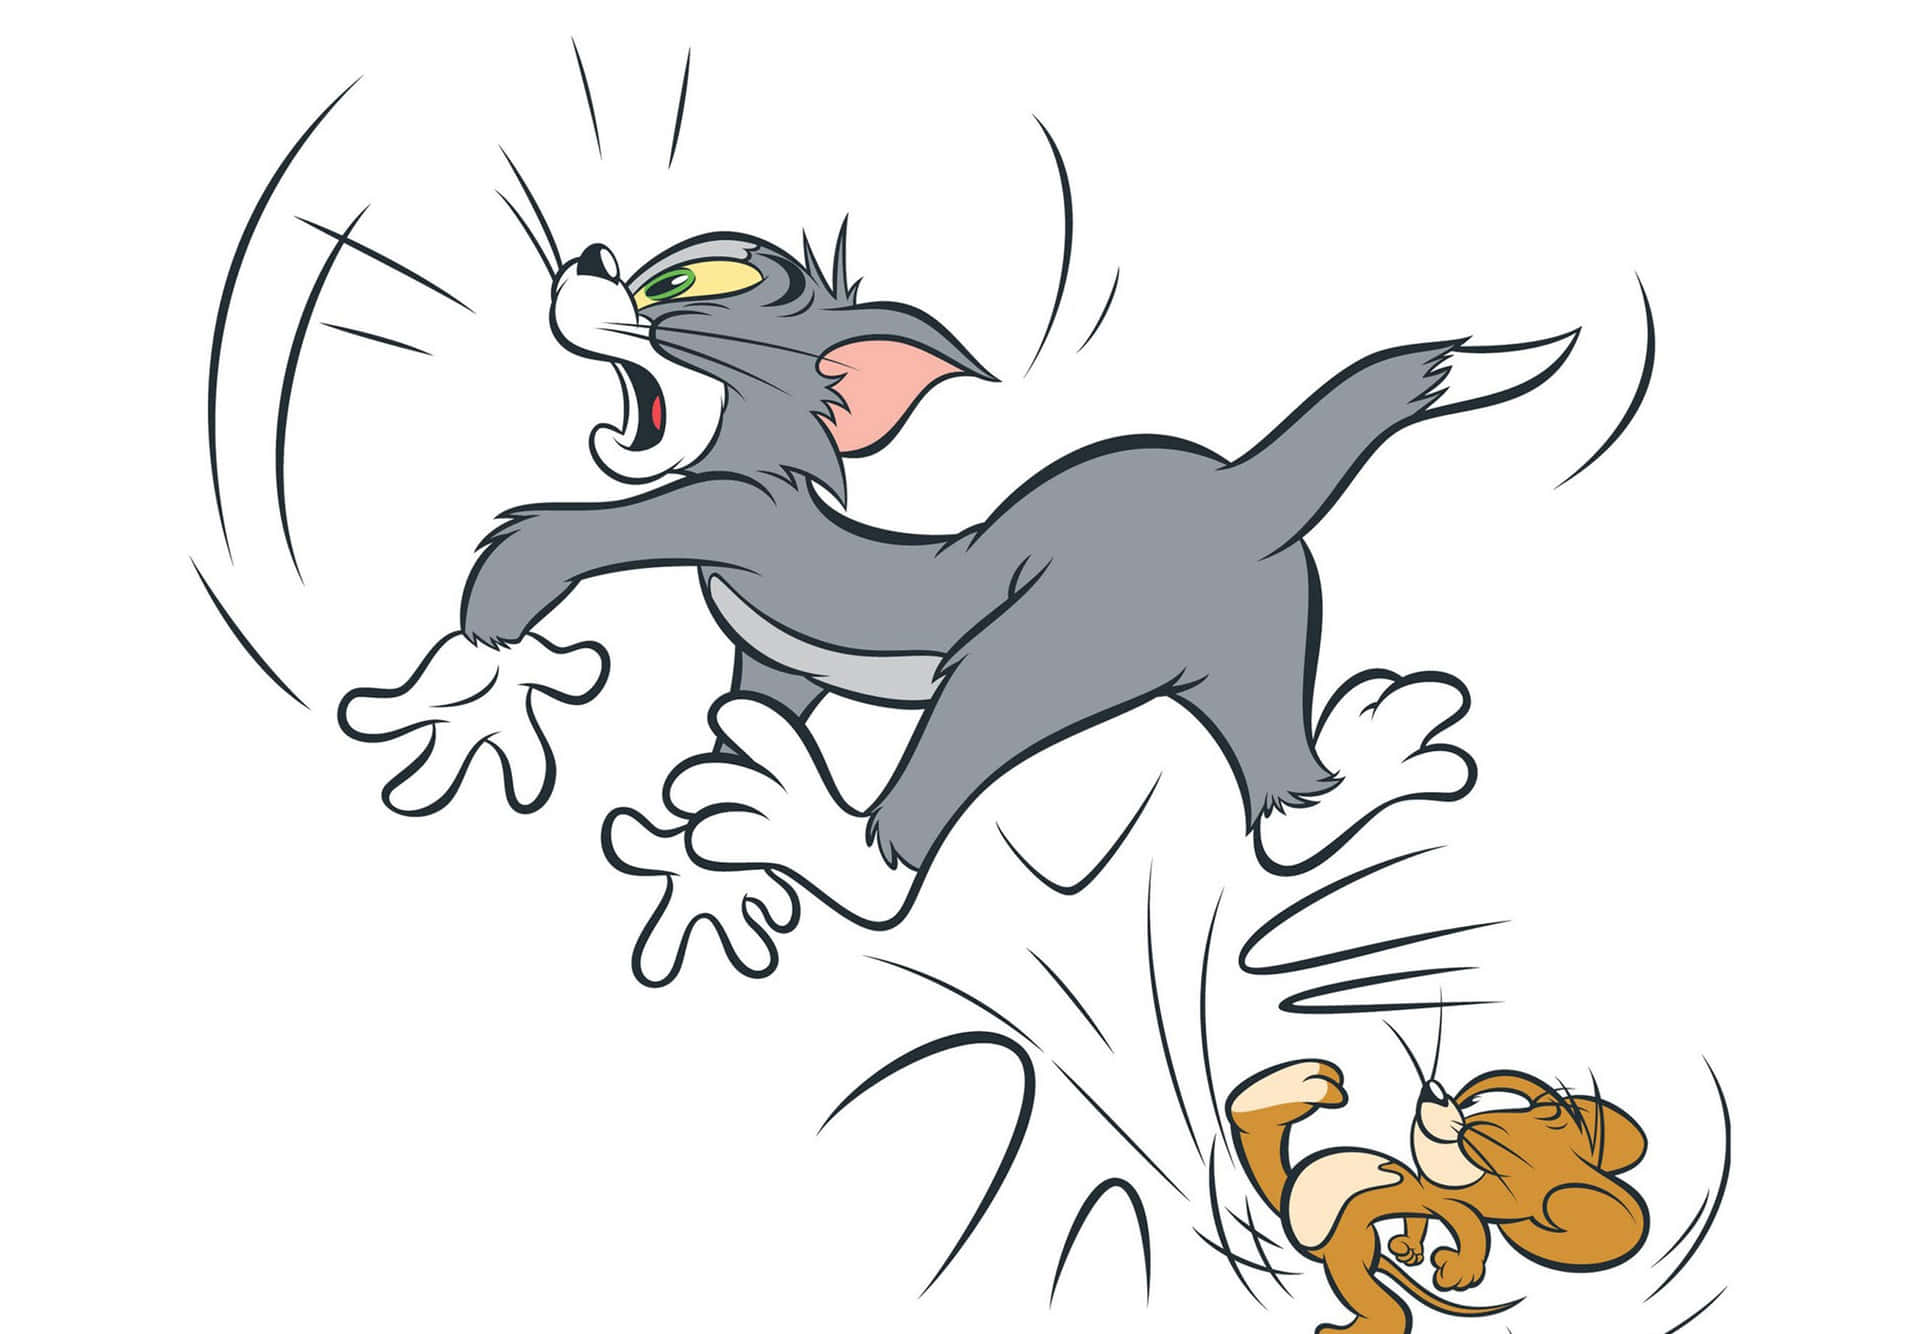 Bag kulisserne er Tom og Jerry klar til nogle morsomme antydninger. Wallpaper